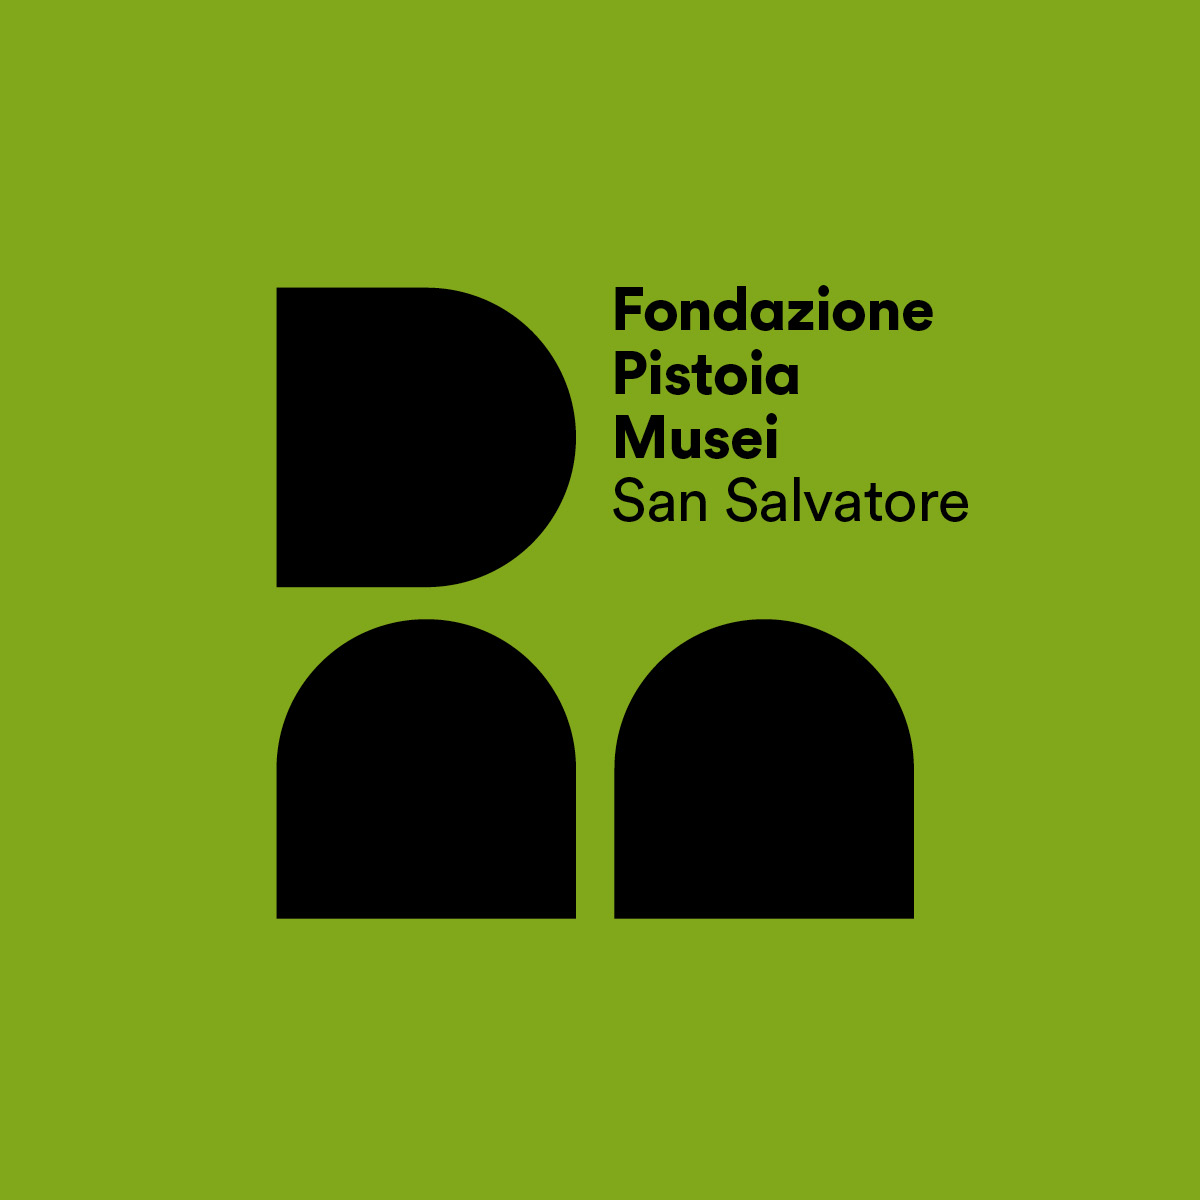 Fondazione-Pistoia-Musei-005 